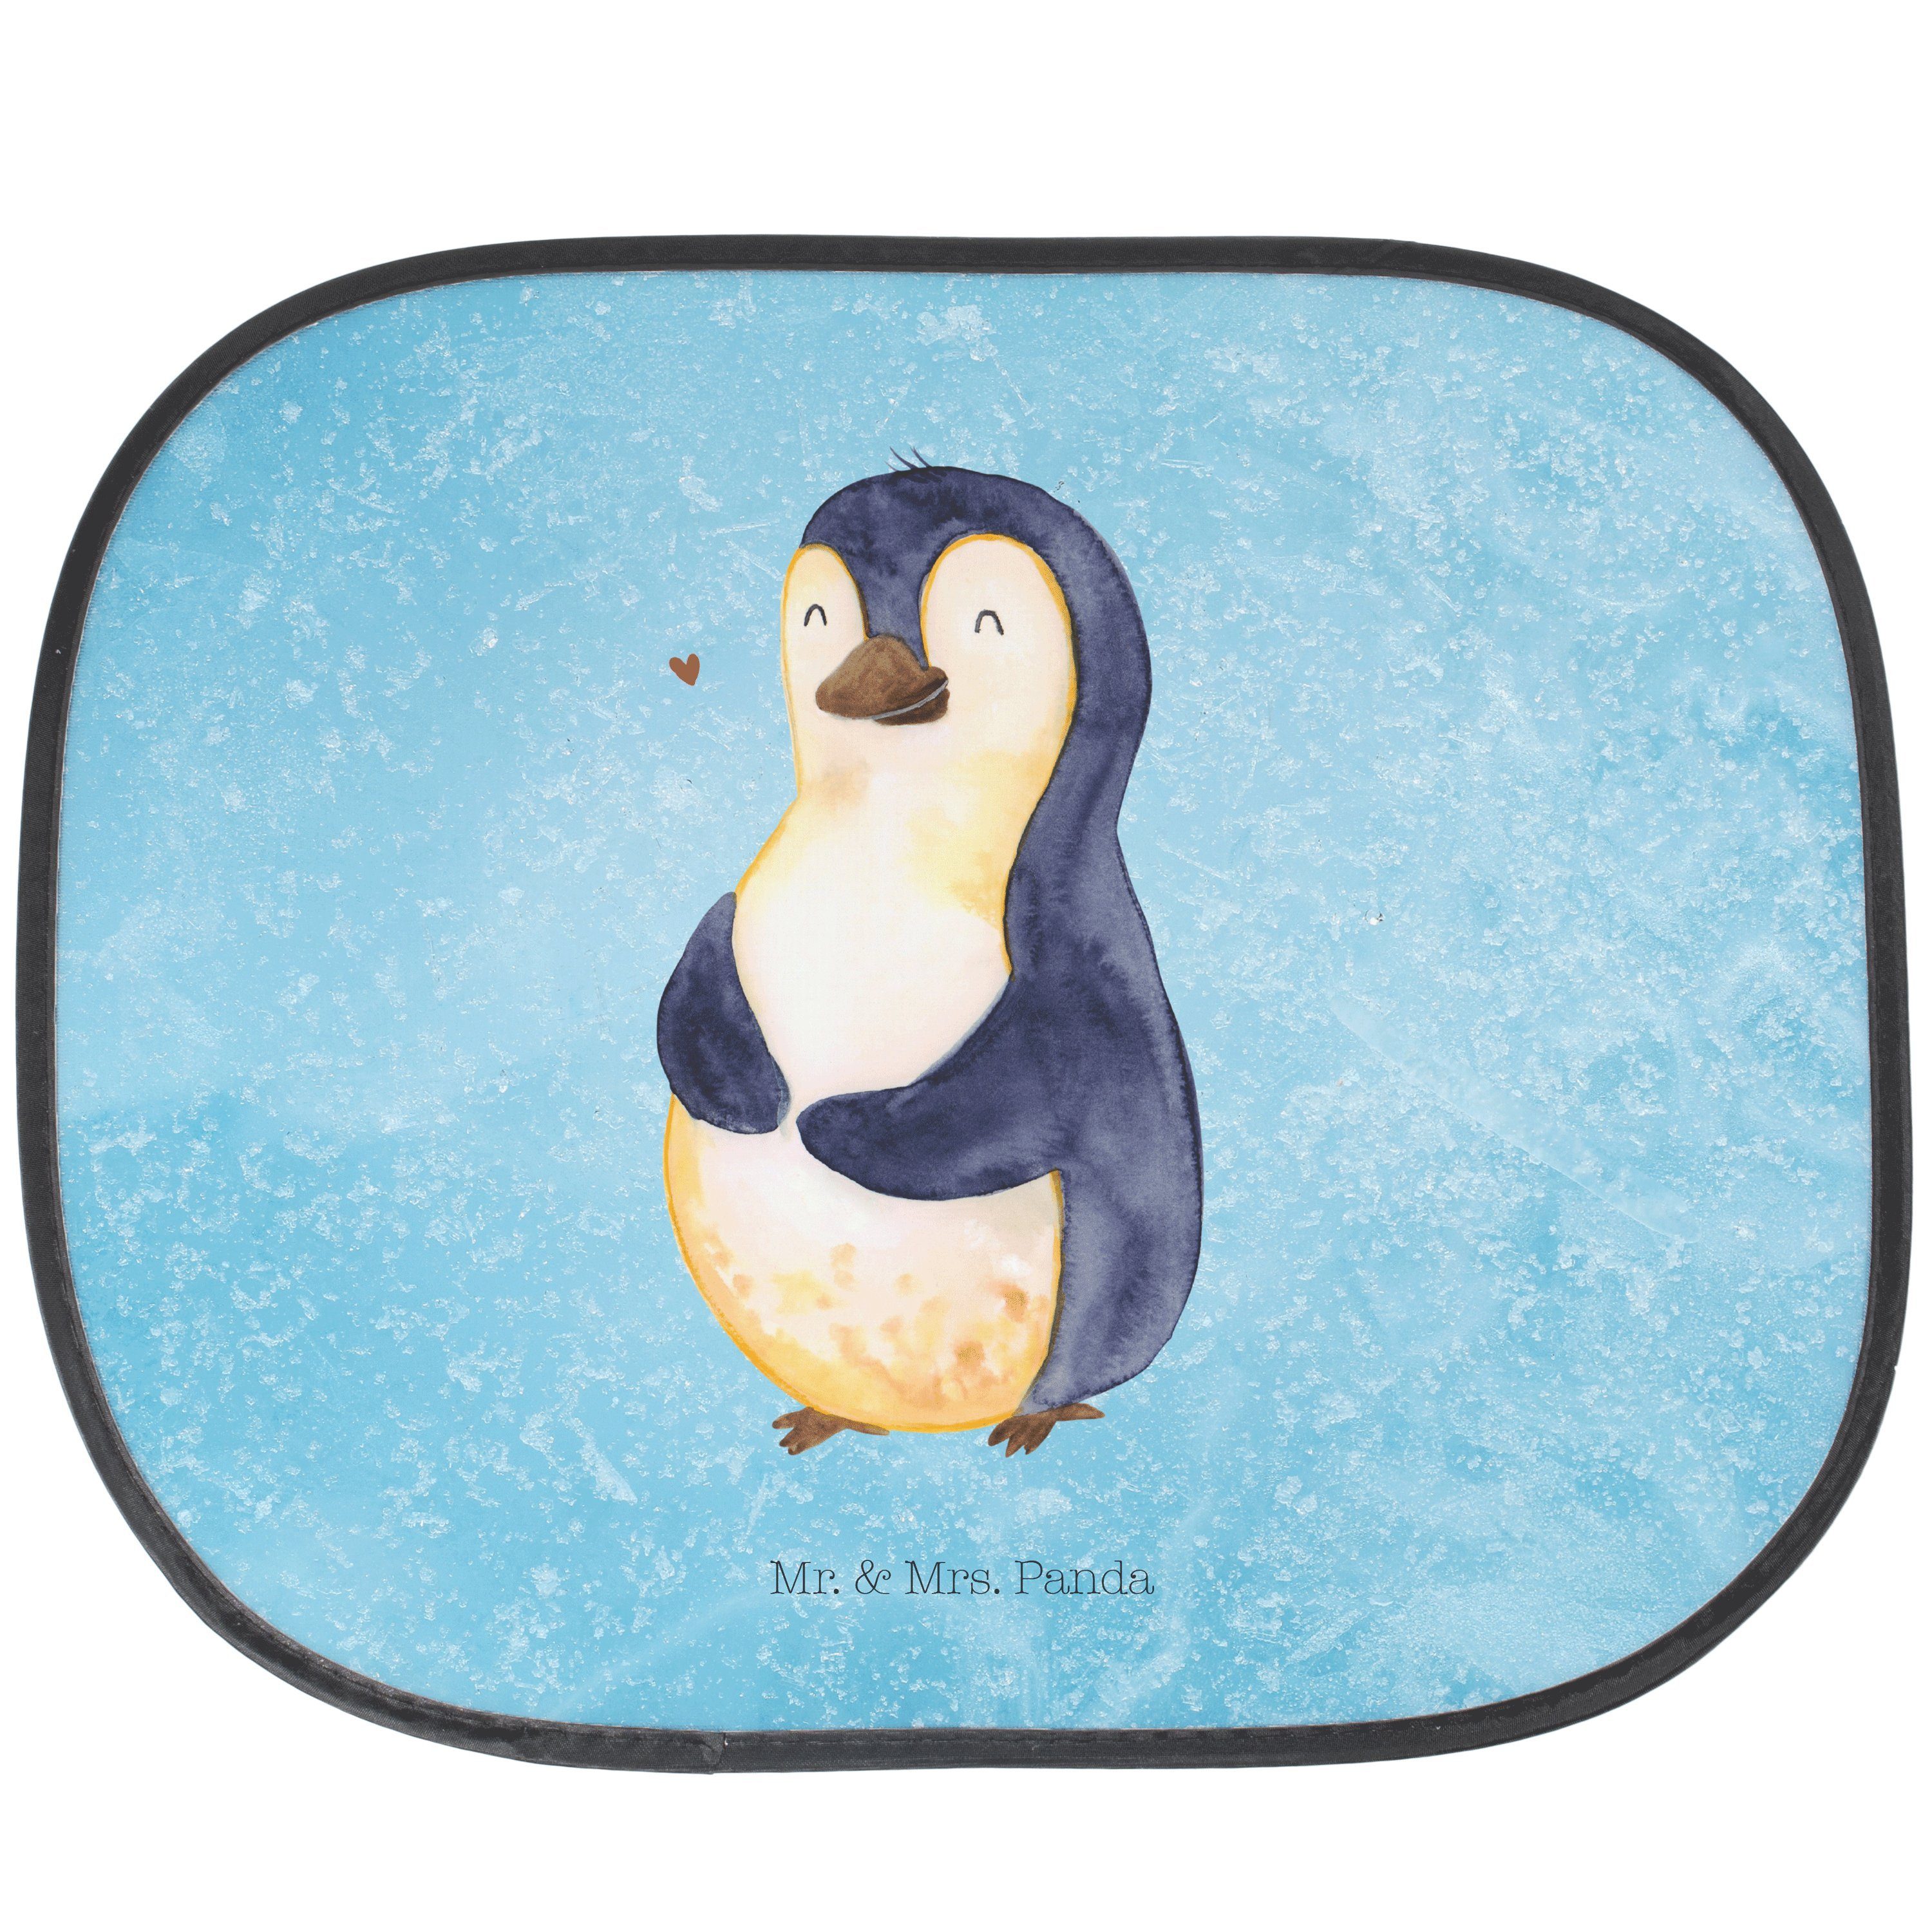 Sonnenschutz Pinguin umarmend - Eisblau - Geschenk, Liebe